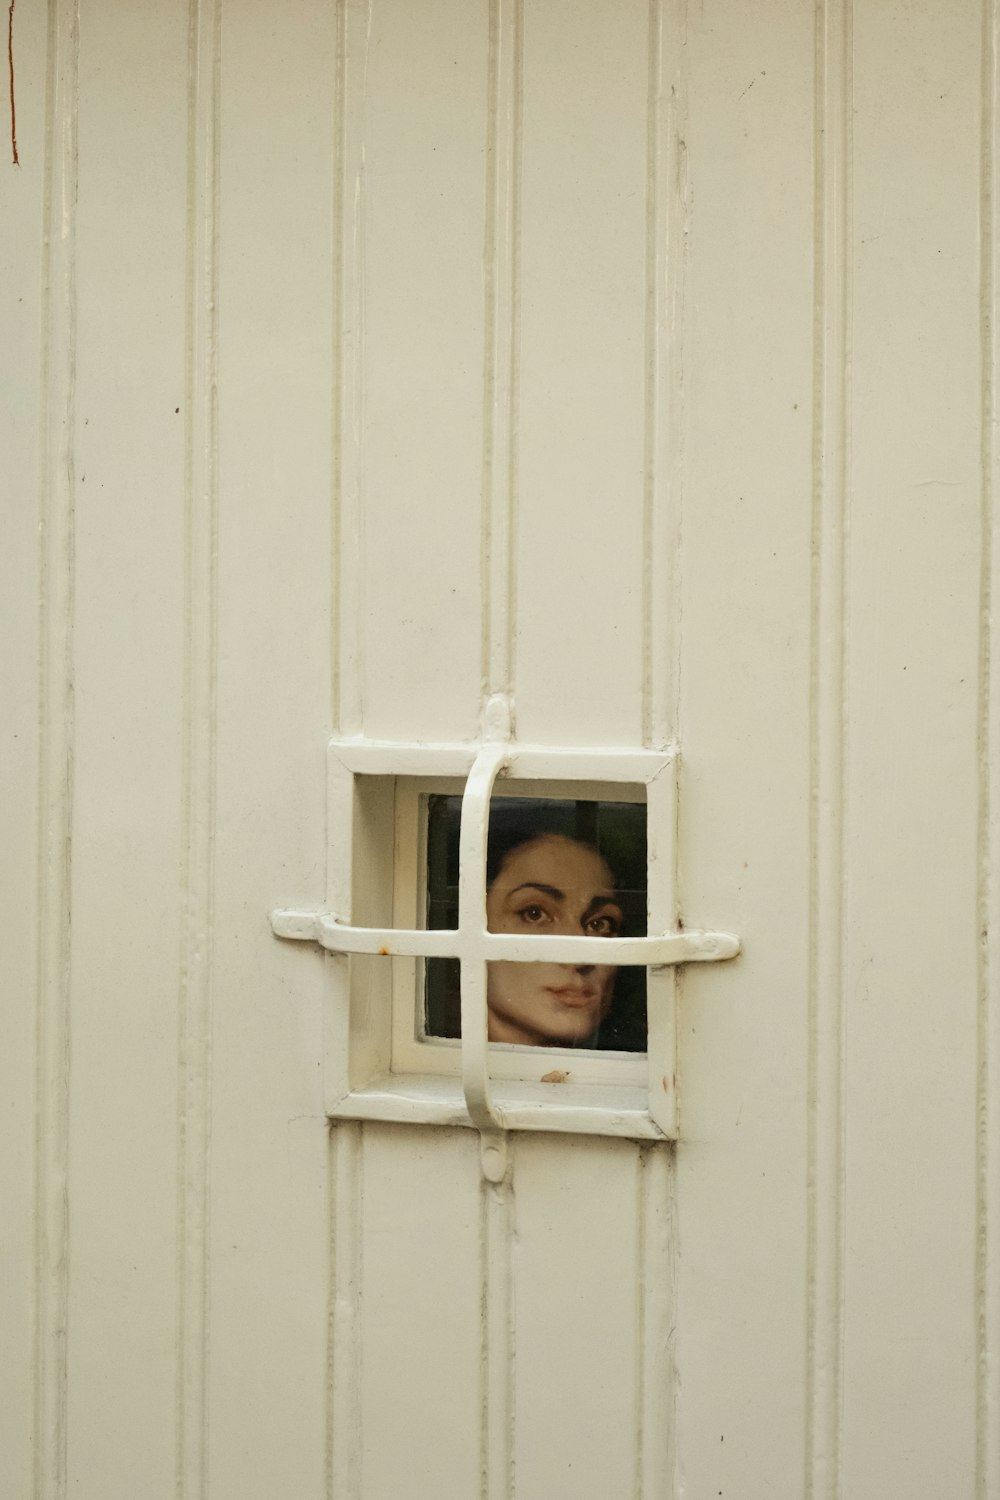 El rostro de una mujer se ve a través de una ventana